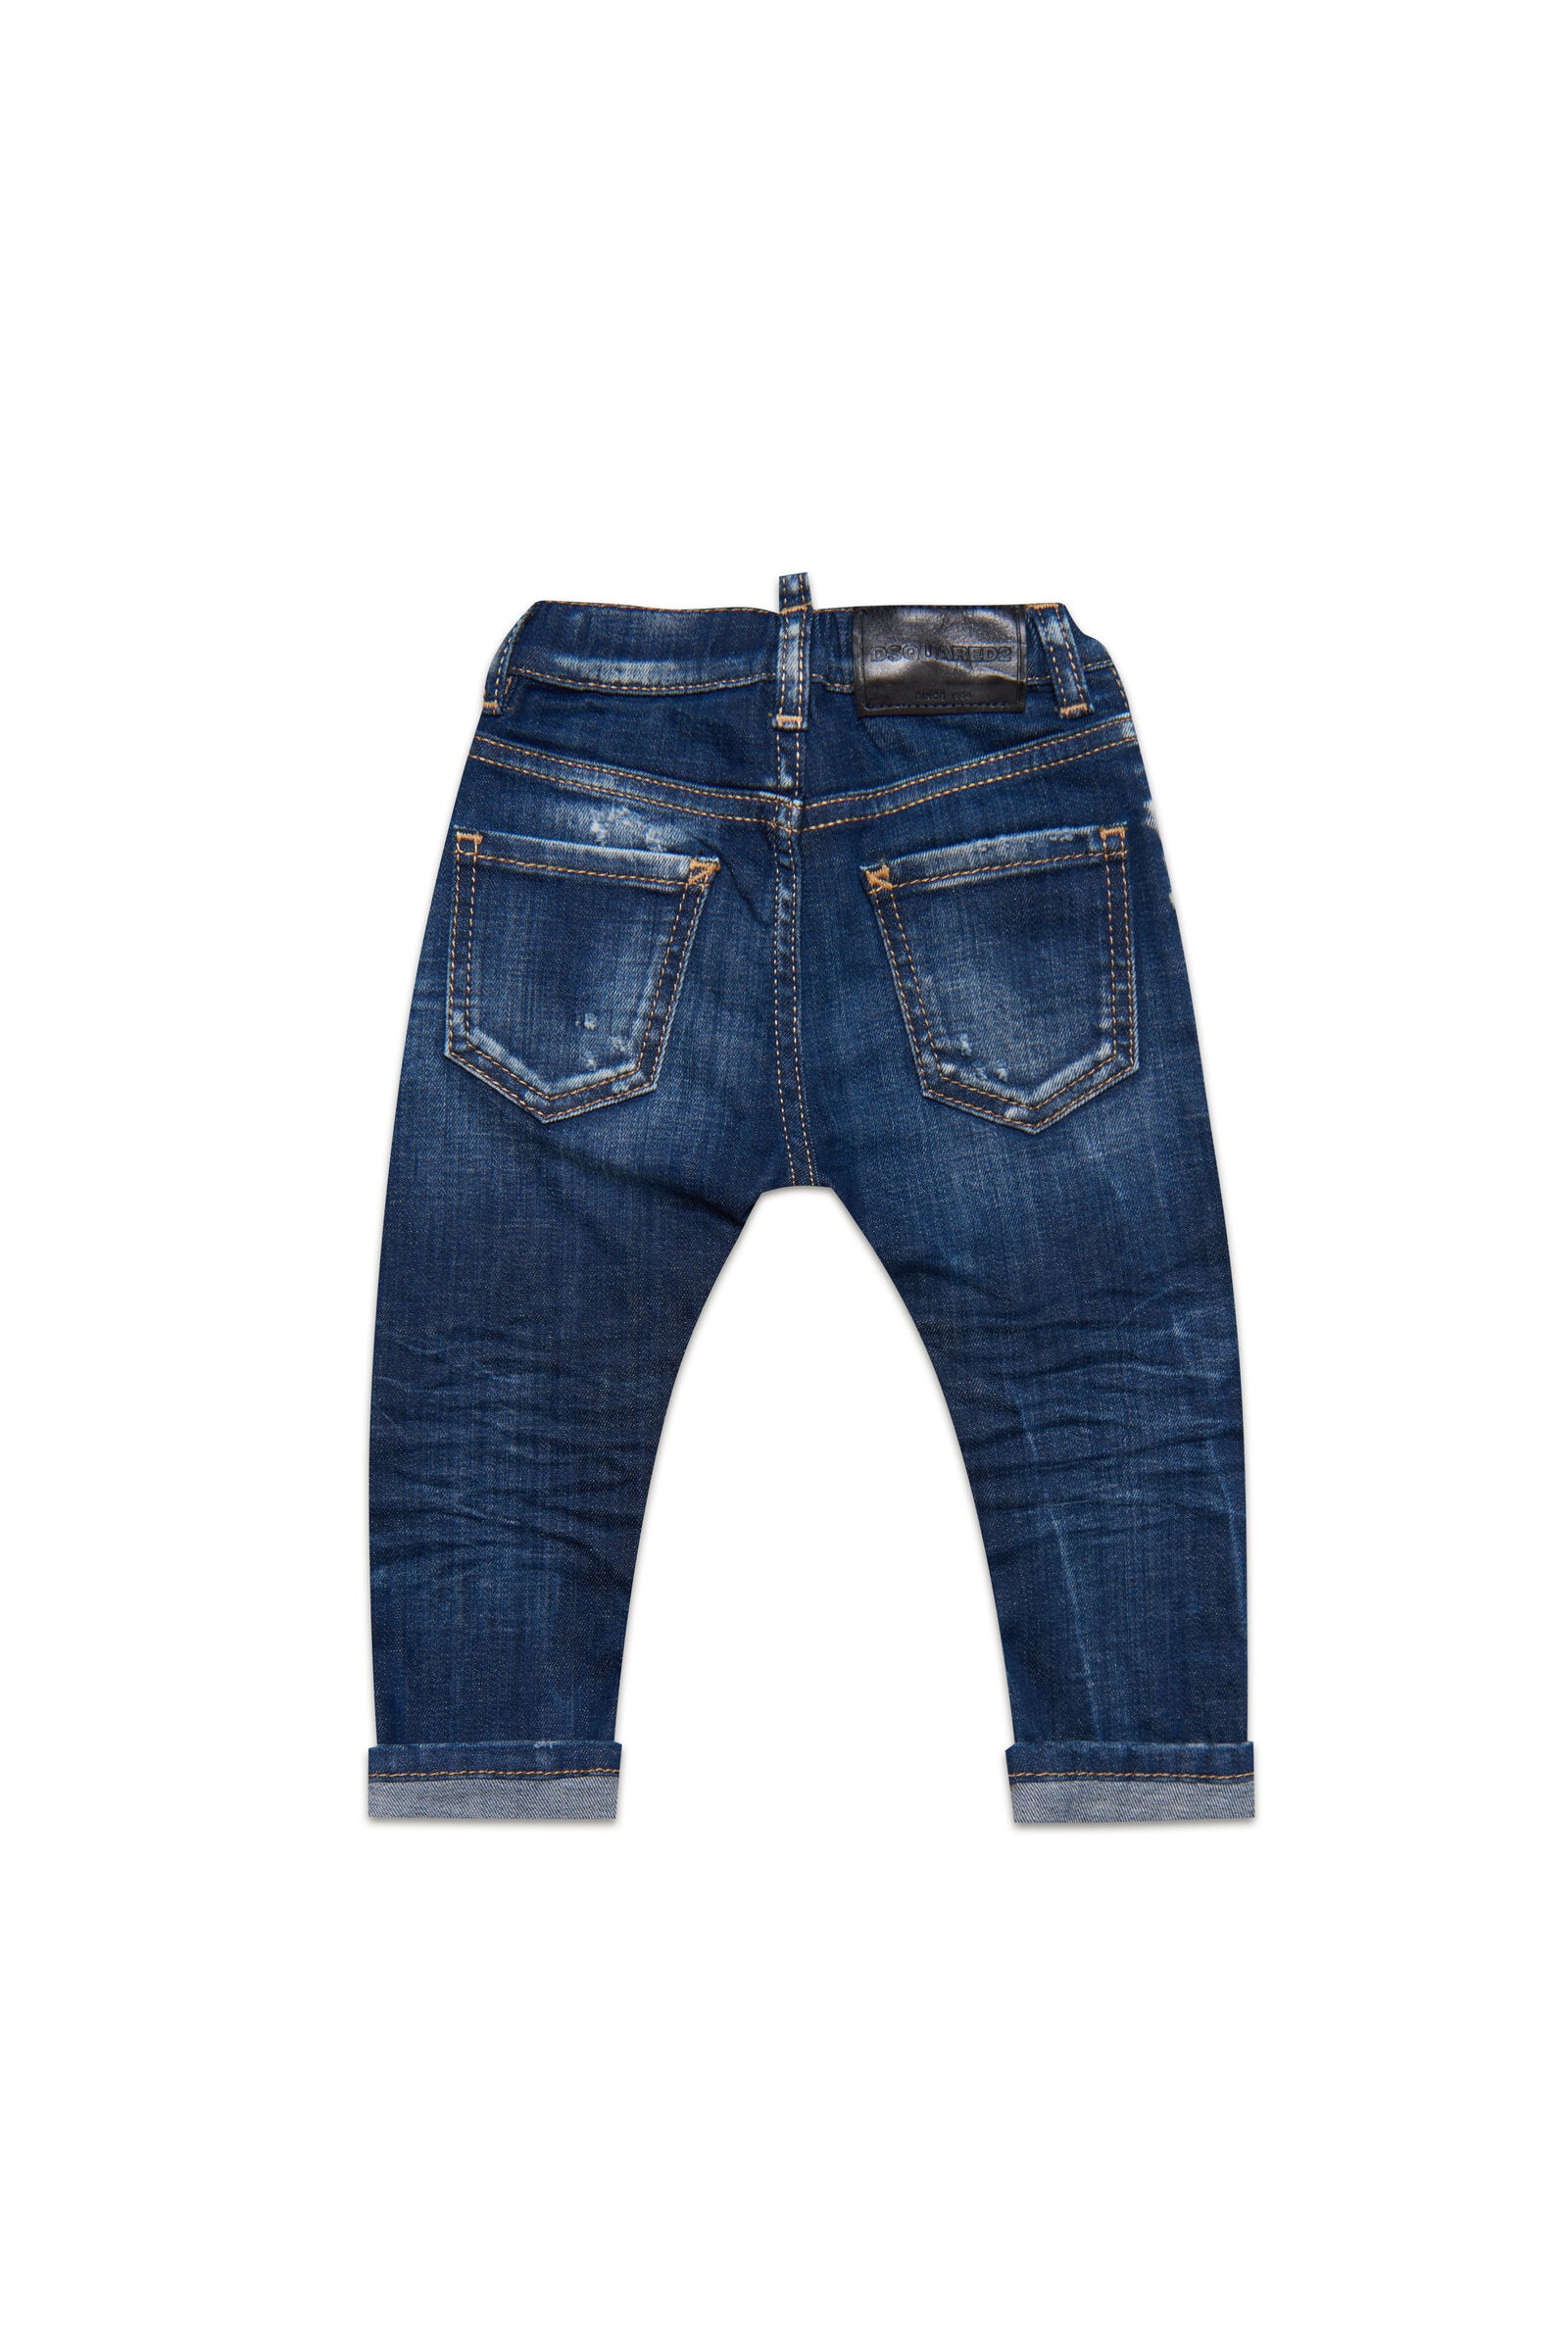 Dsquared2 Jeans Unisex Child DQ01TC D0A4M BLUE DENIM